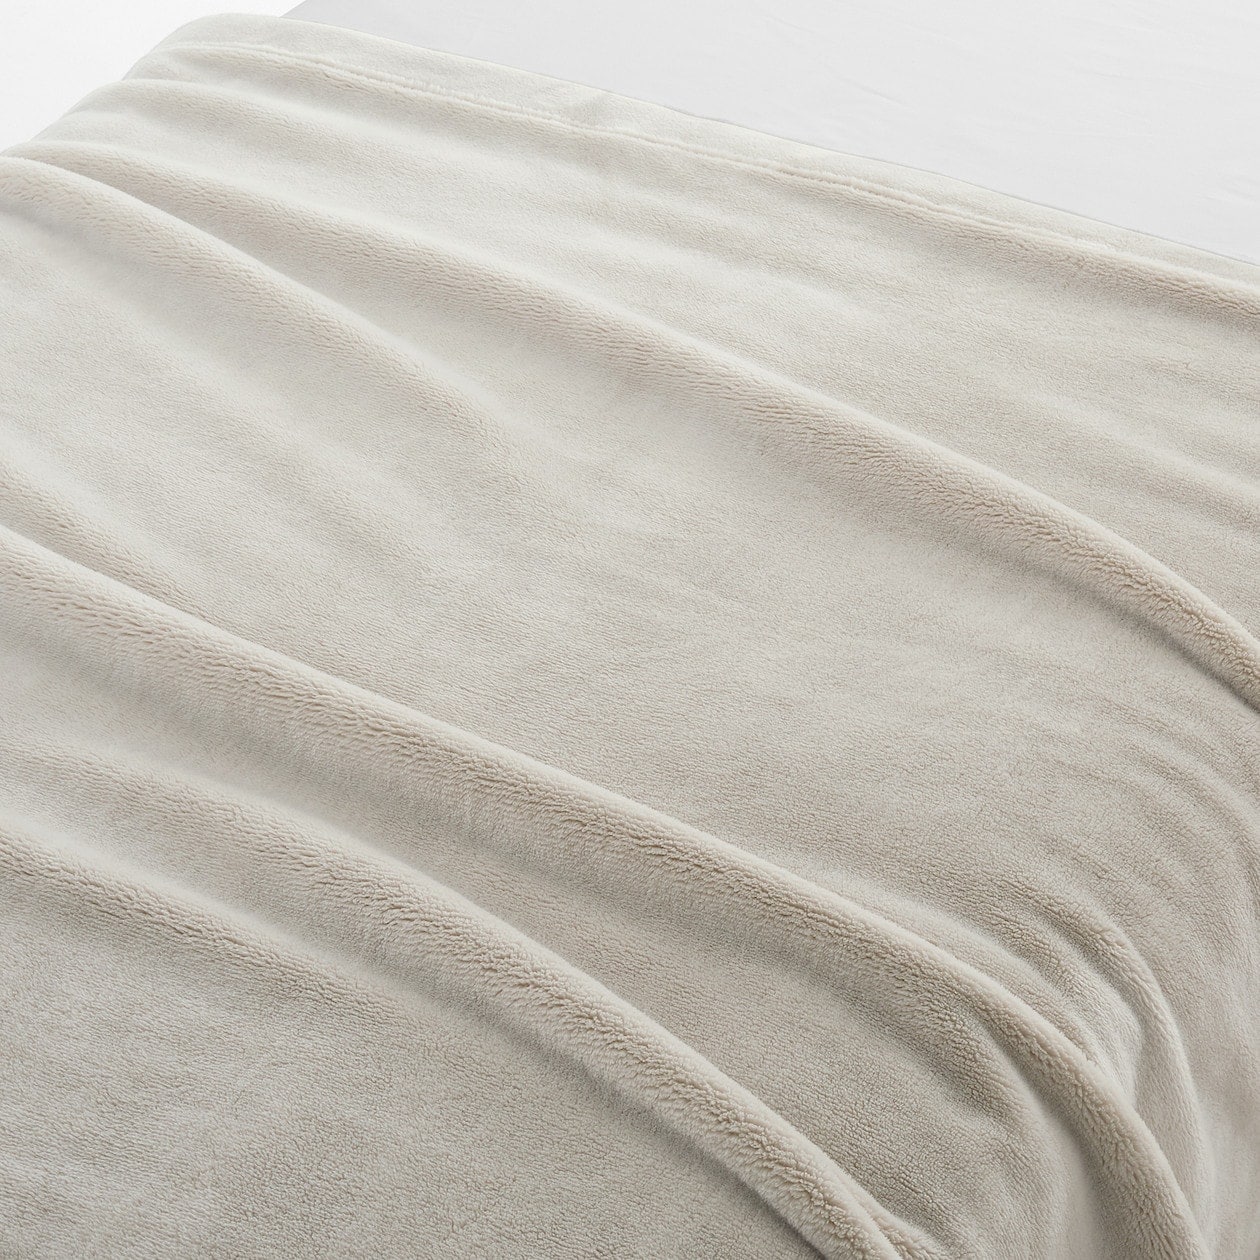 これヤバイ...無印の毛布で寝たら快適すぎた - MUJIO | Yahoo! JAPAN クリエイターズプログラム